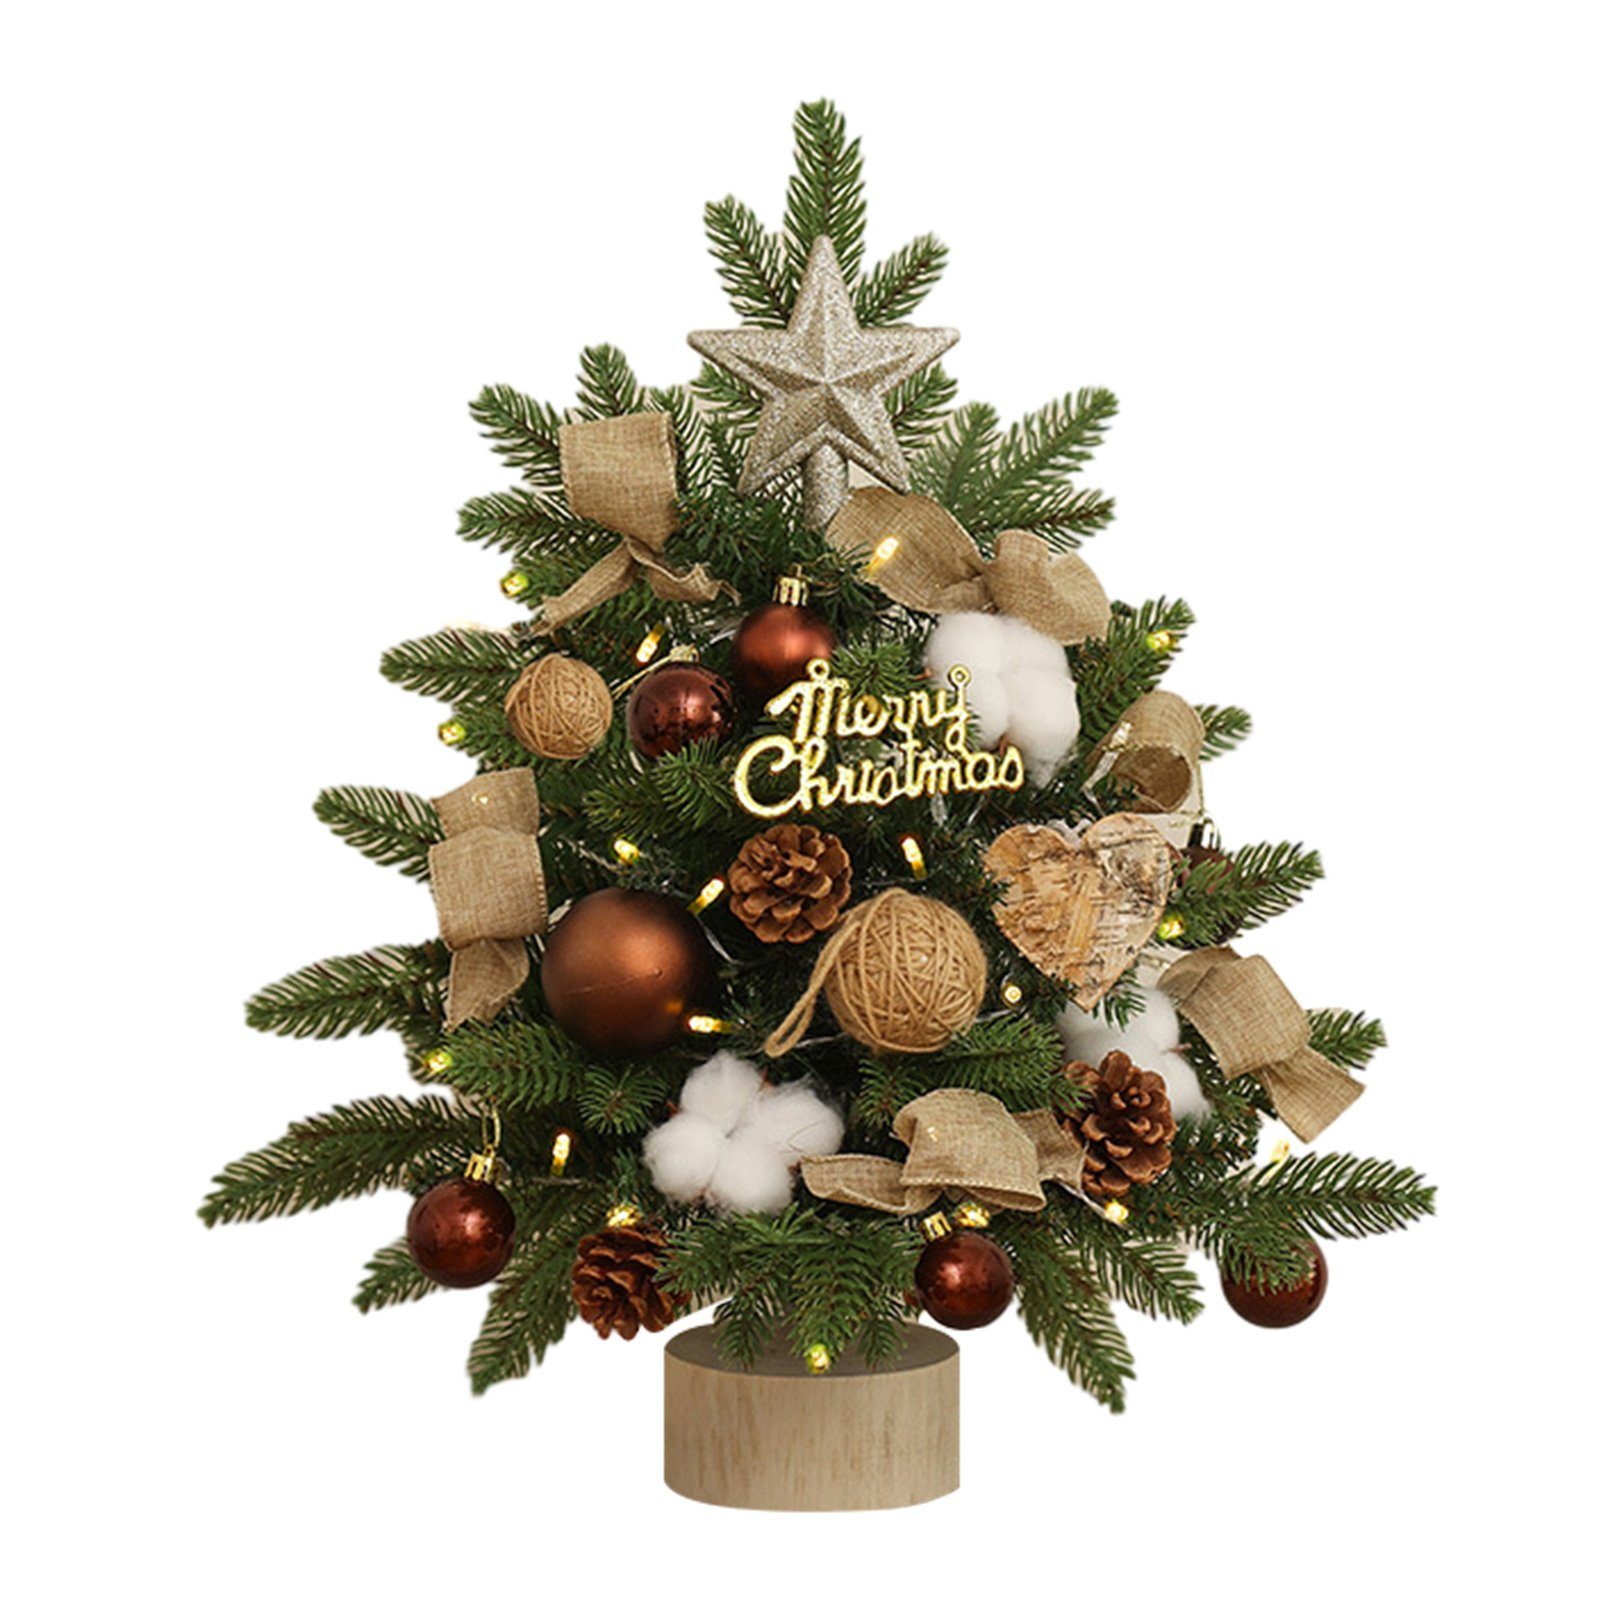 Blusmart Künstlicher Weihnachtsbaum Kleiner 45 Cm Großer Tisch-Weihnachtsbaum Mit Mehrfarbigem Dekor, Künstlicher Weihnachtsbaum brown